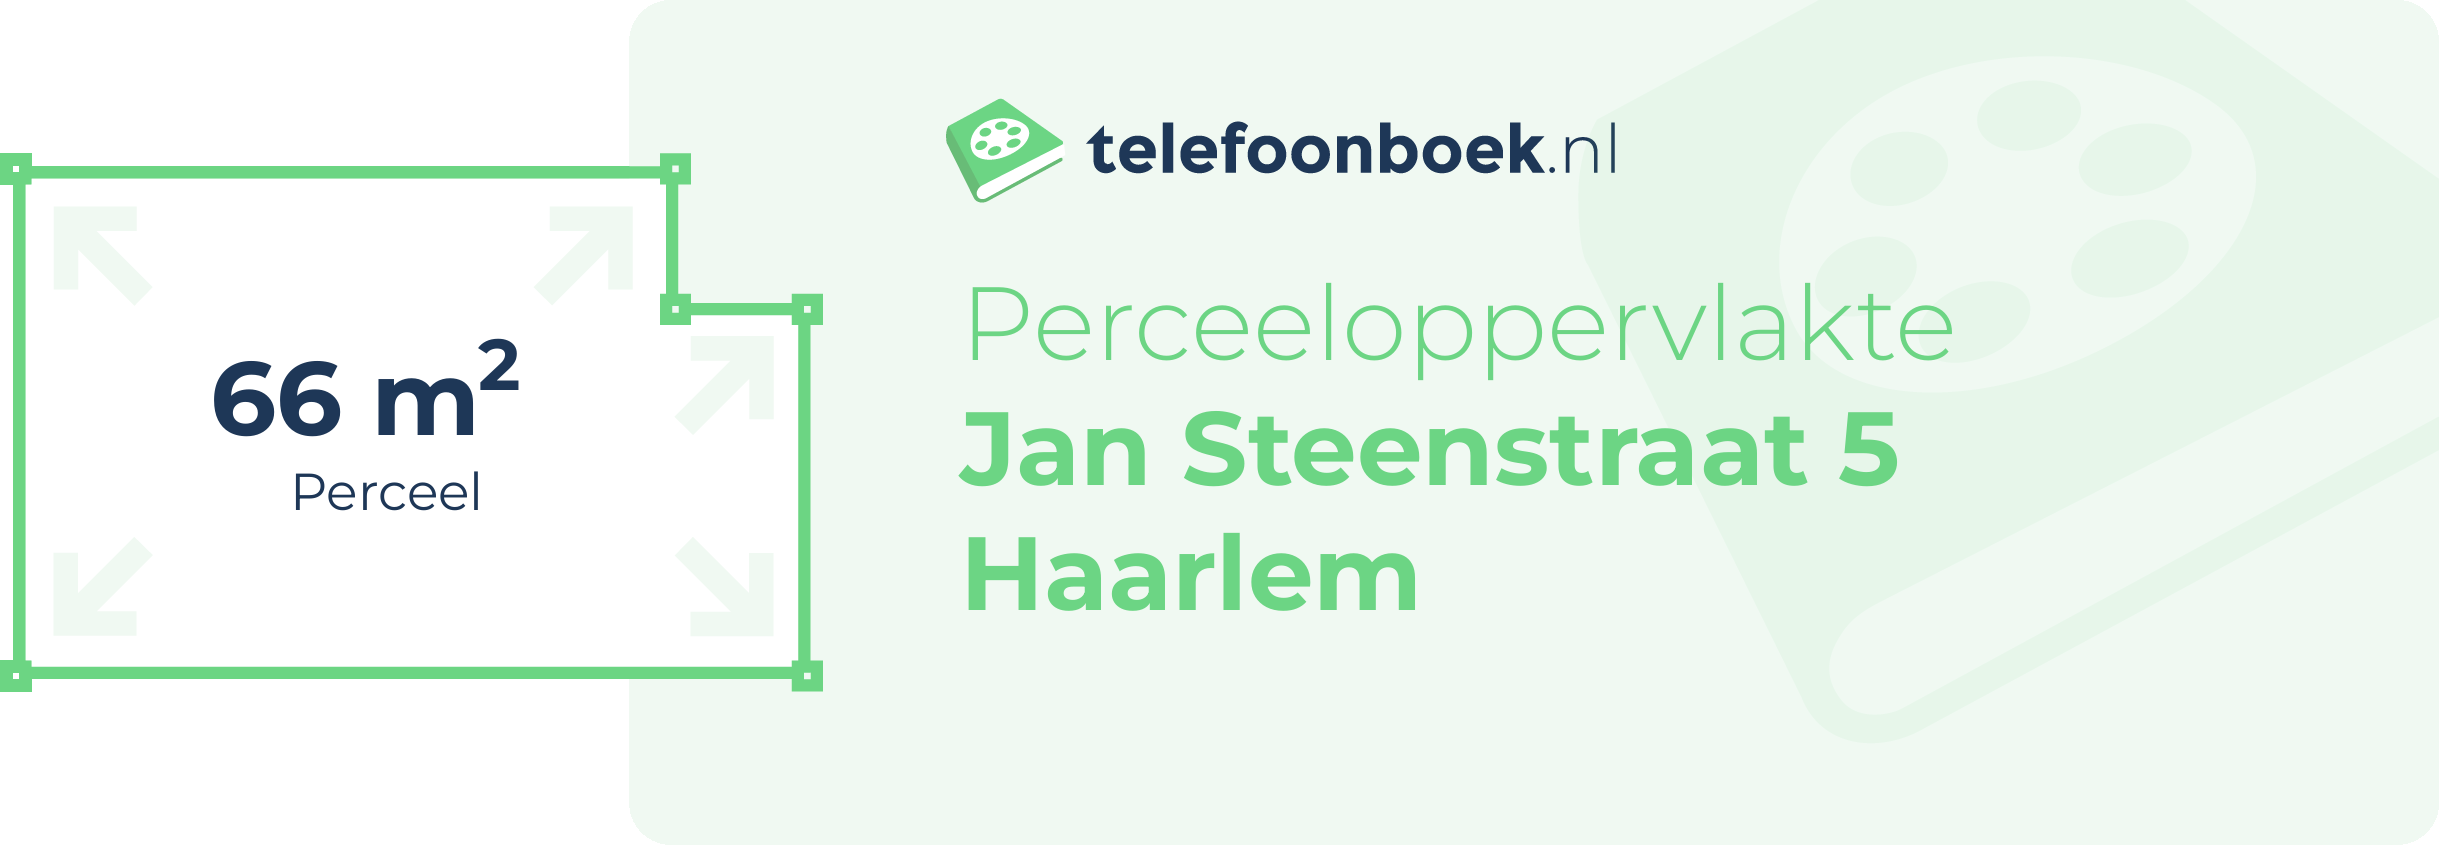 Perceeloppervlakte Jan Steenstraat 5 Haarlem